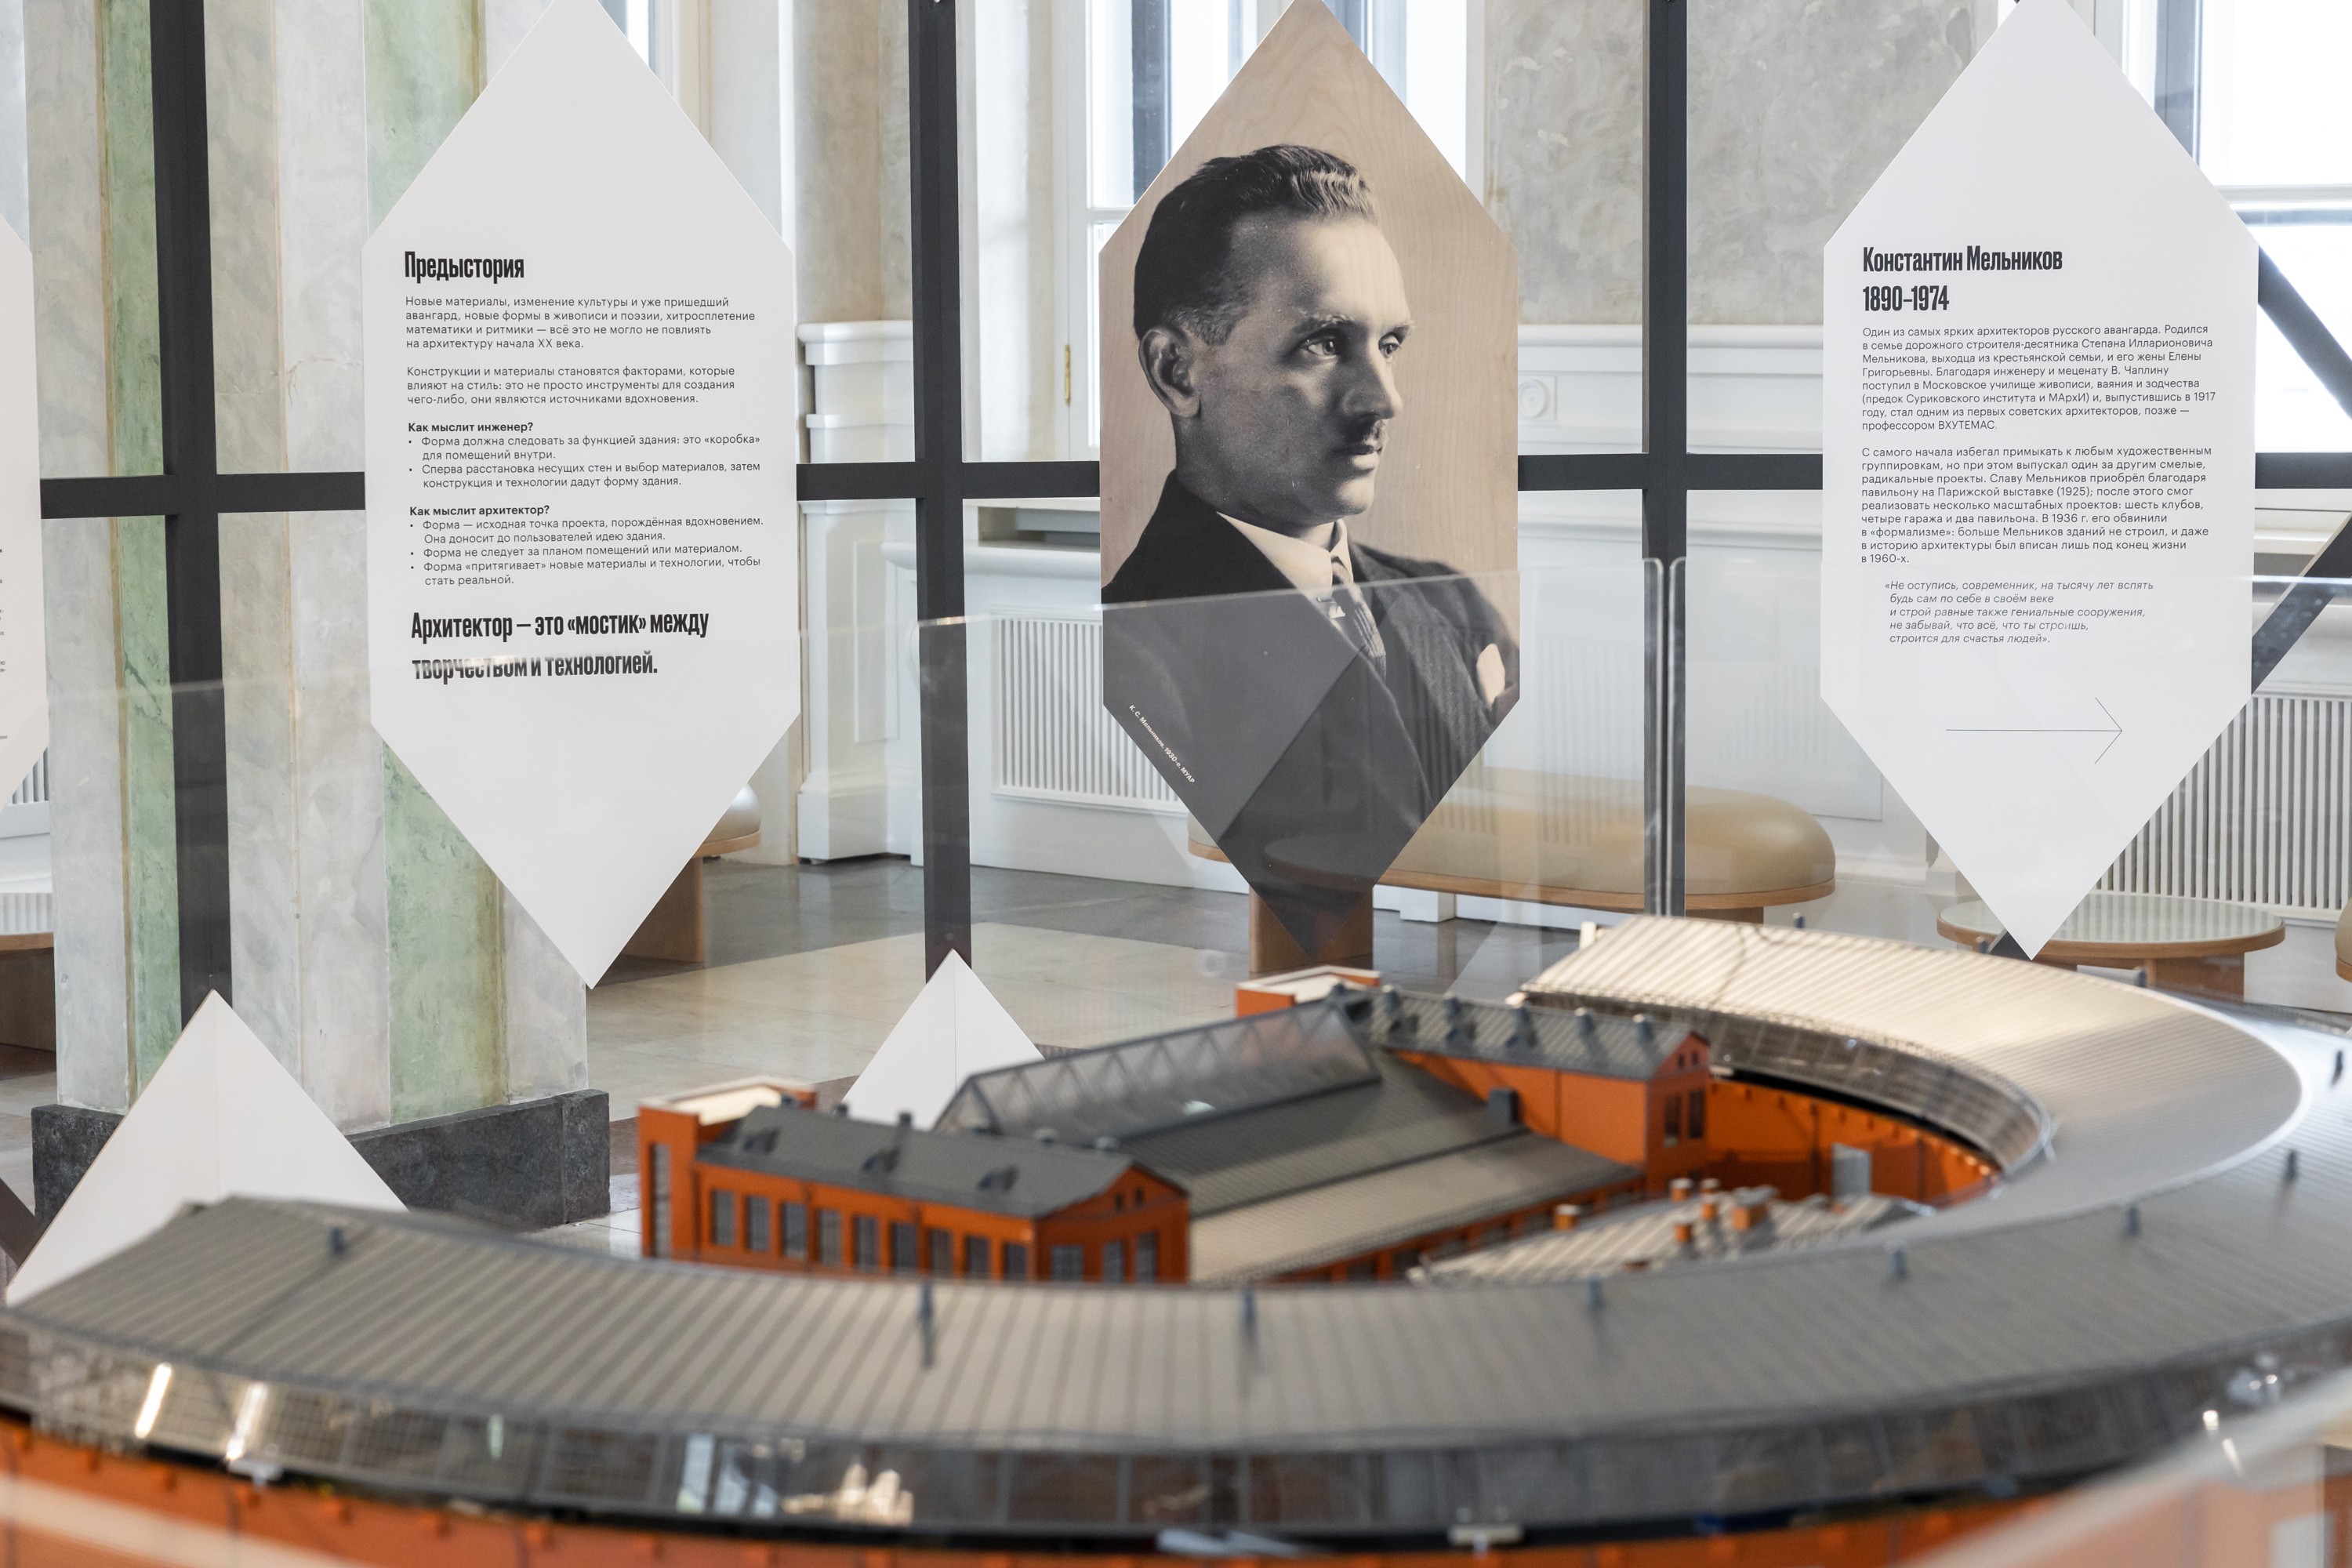 Инсталляция о Константине Мельникове: «Архитектор, который видел будущее». Северный речной вокзал